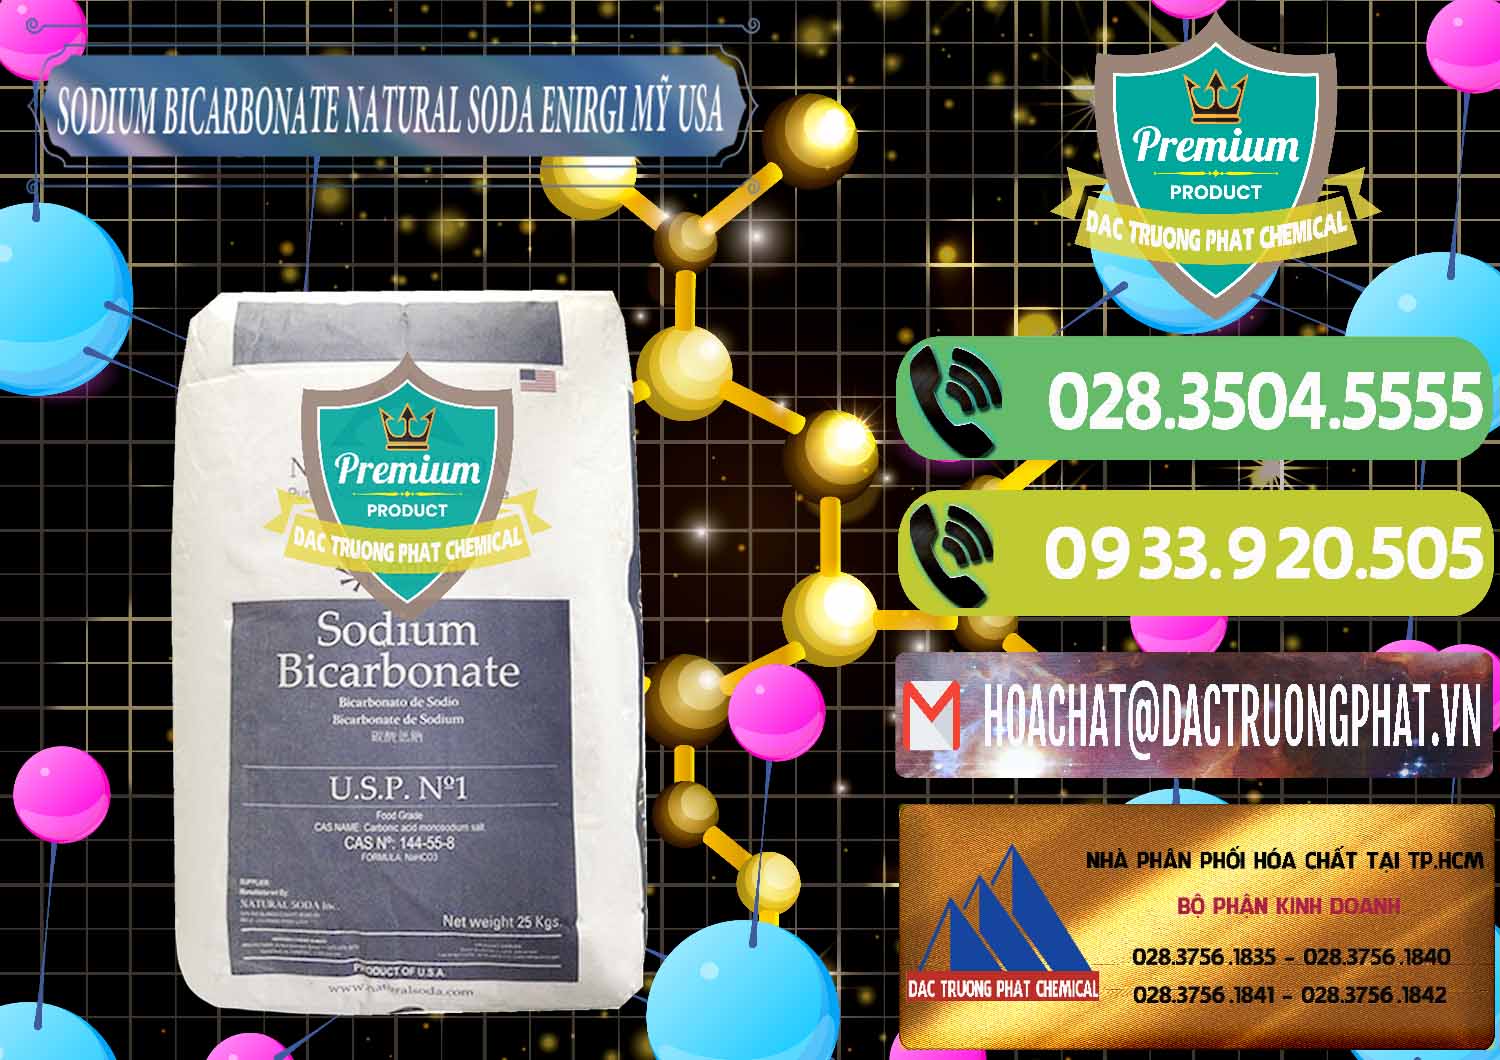 Cty cung cấp - bán Sodium Bicarbonate – Bicar NaHCO3 Food Grade Natural Soda Enirgi Mỹ USA - 0257 - Công ty nhập khẩu _ phân phối hóa chất tại TP.HCM - hoachatmientay.vn